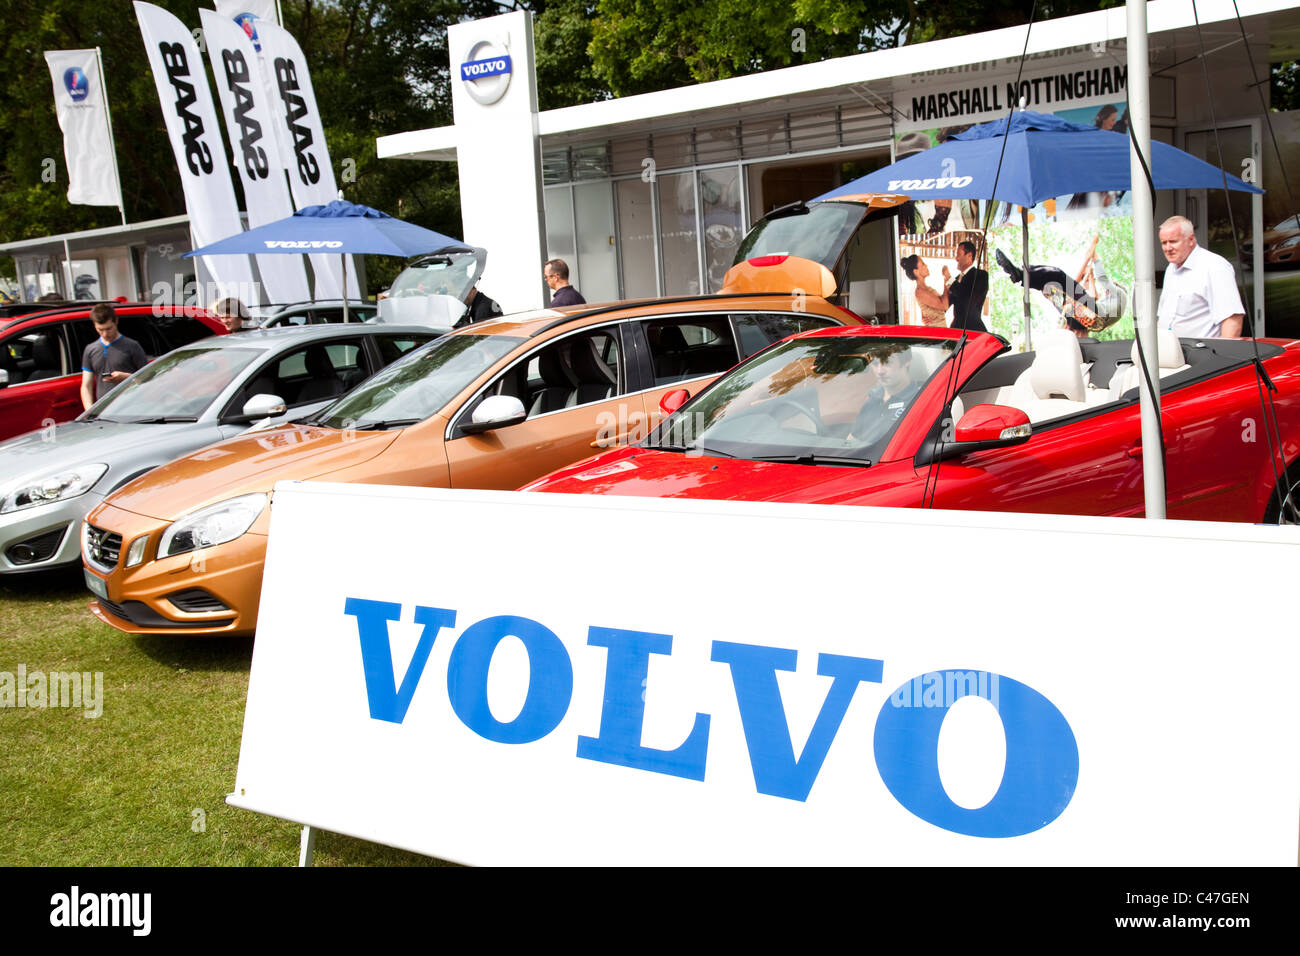 Concesionario de automóviles Volvo promoción en un evento motorshow Inglaterra Foto de stock